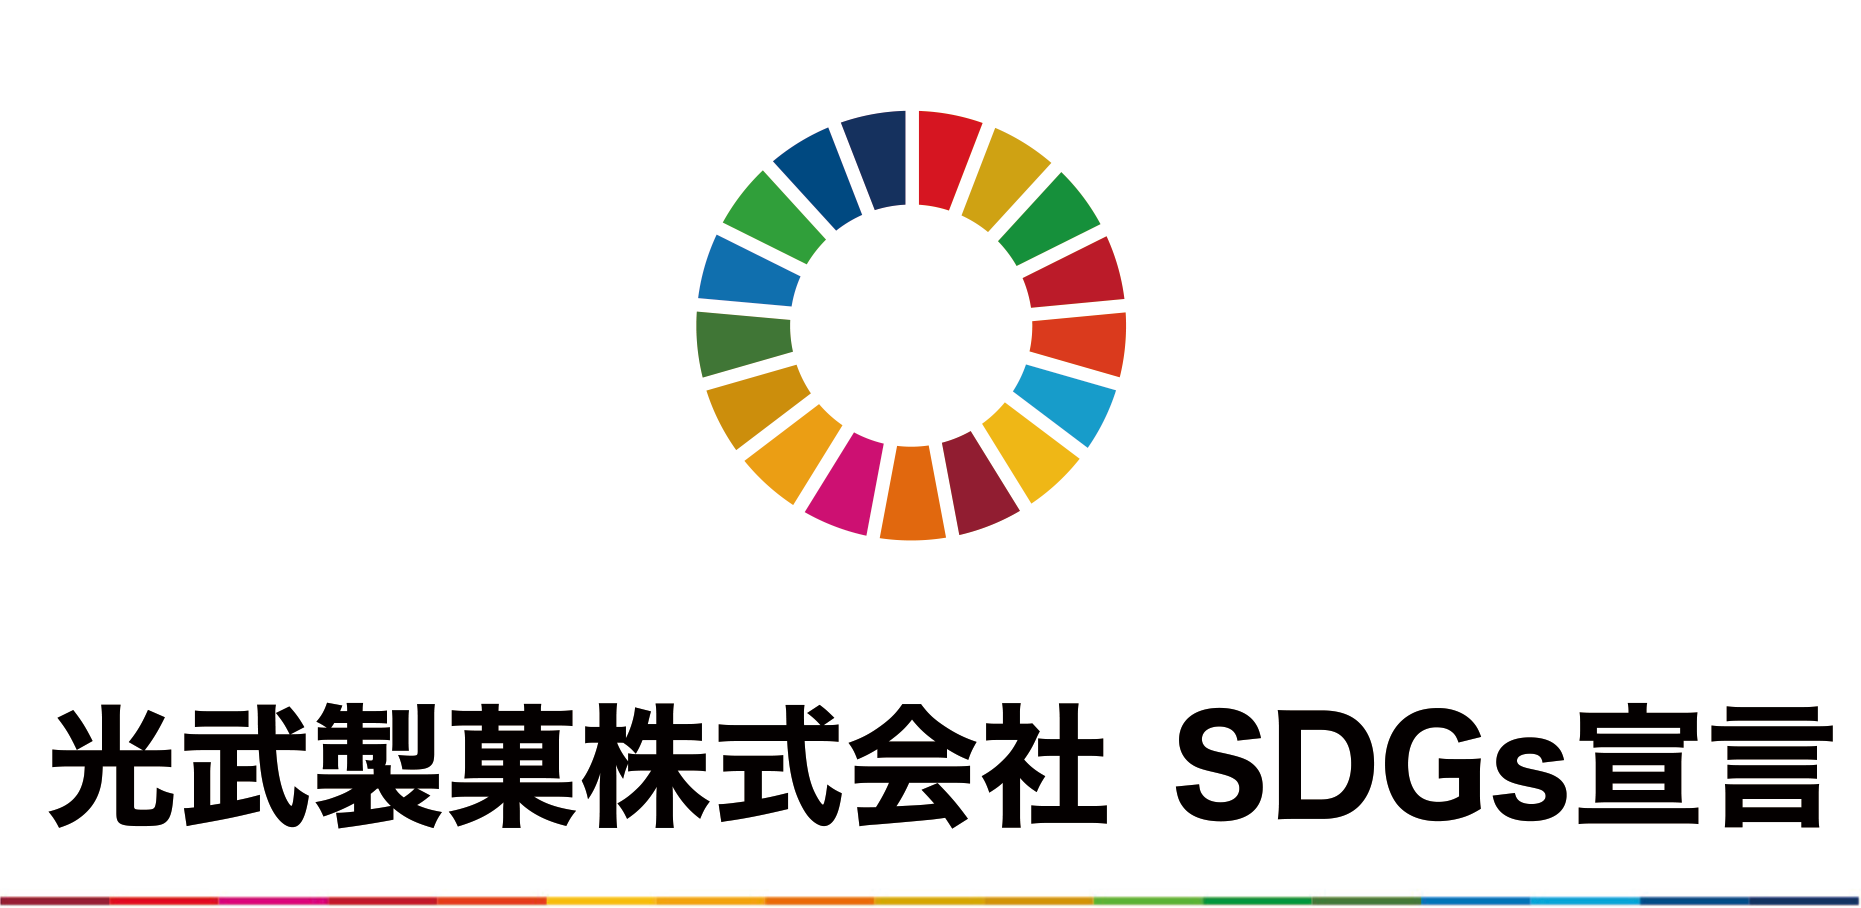 光武製菓株式会社 SDGs 宣言